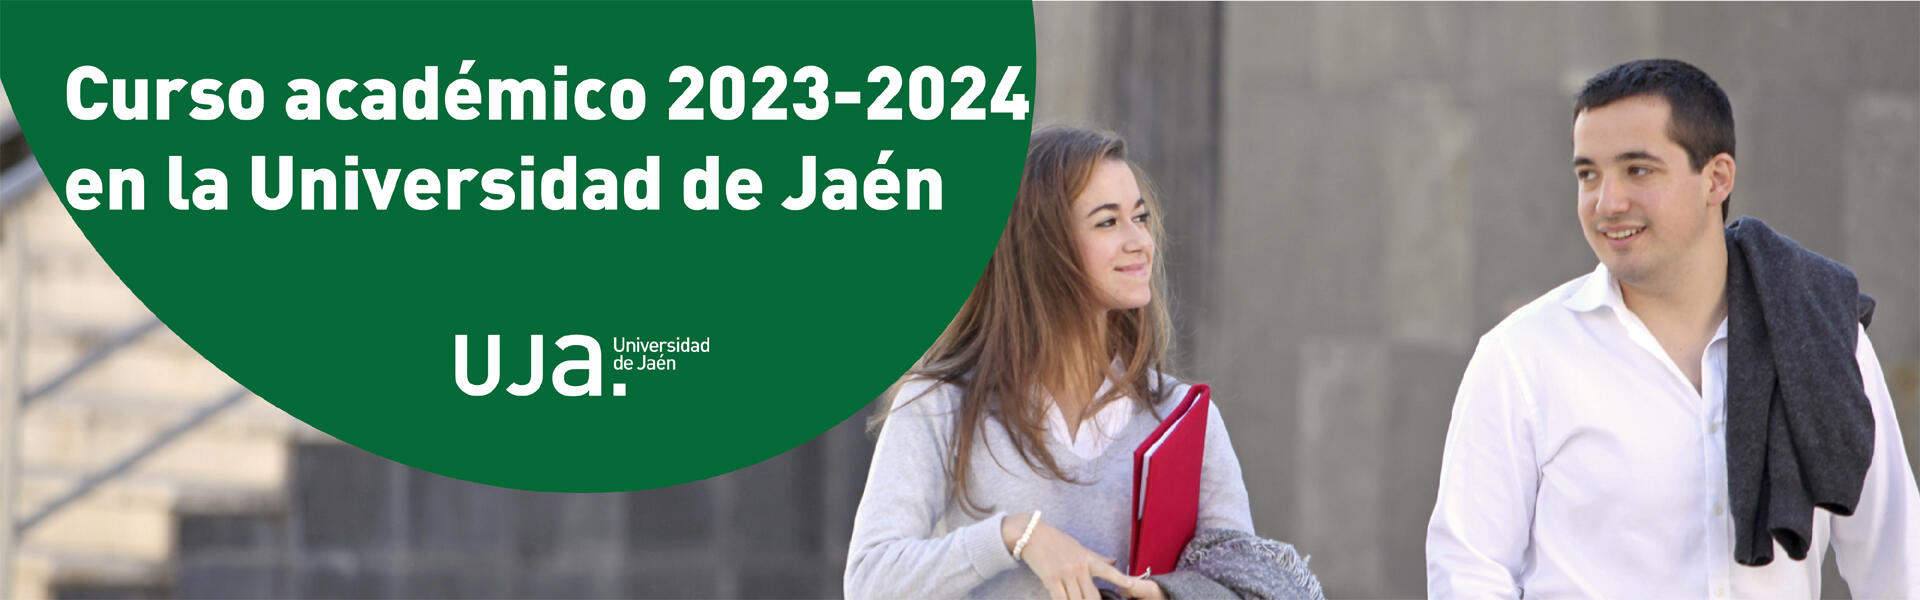 Curso académico 2023-2024 en la Universidad de Jaén